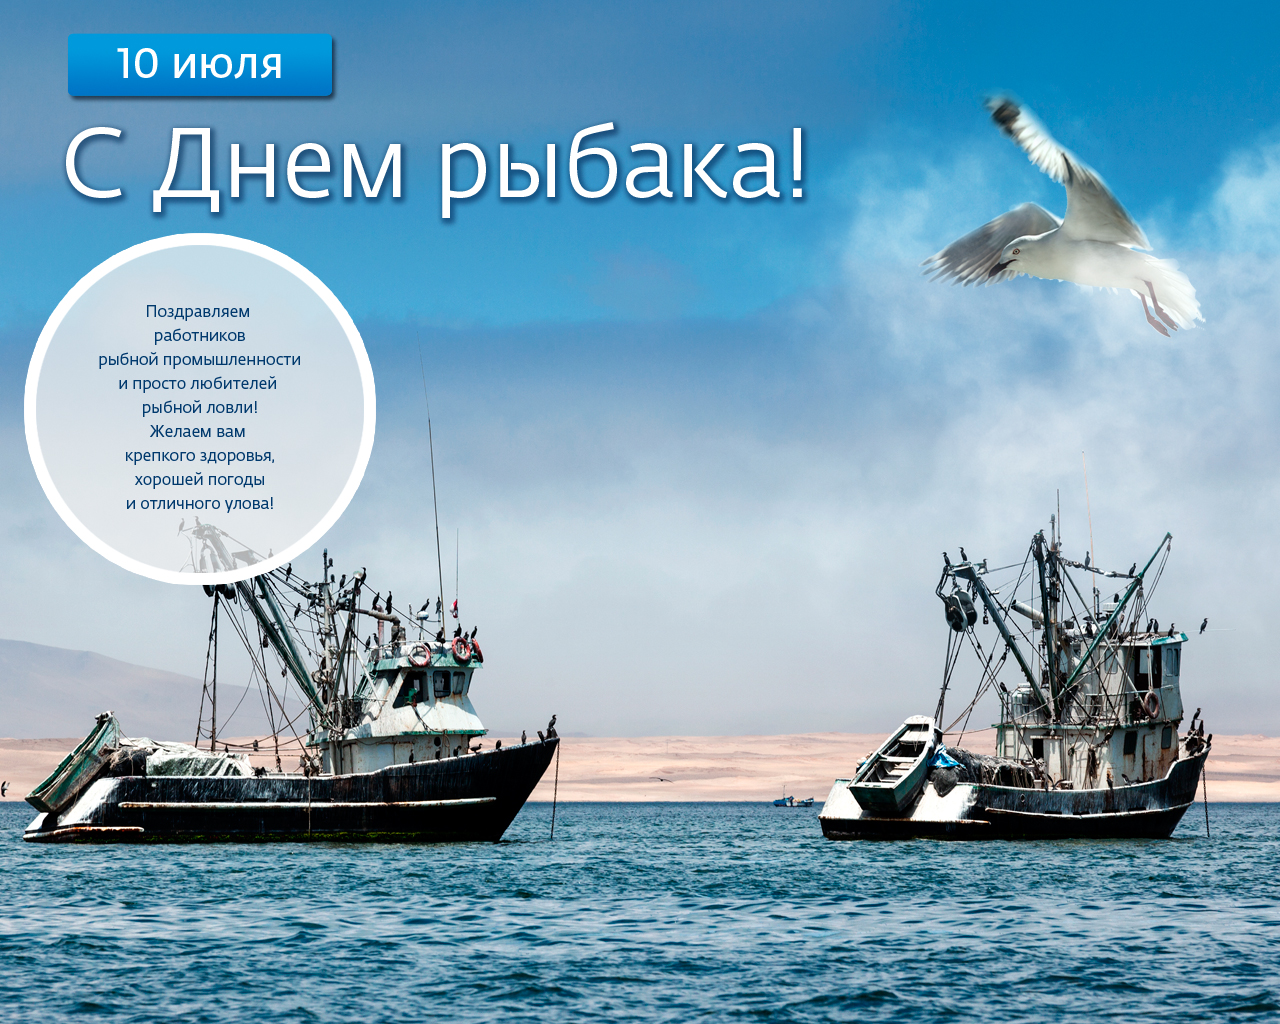 Поздравление губернатора Челябинской области А.Л. Текслера с Днем рыбака!